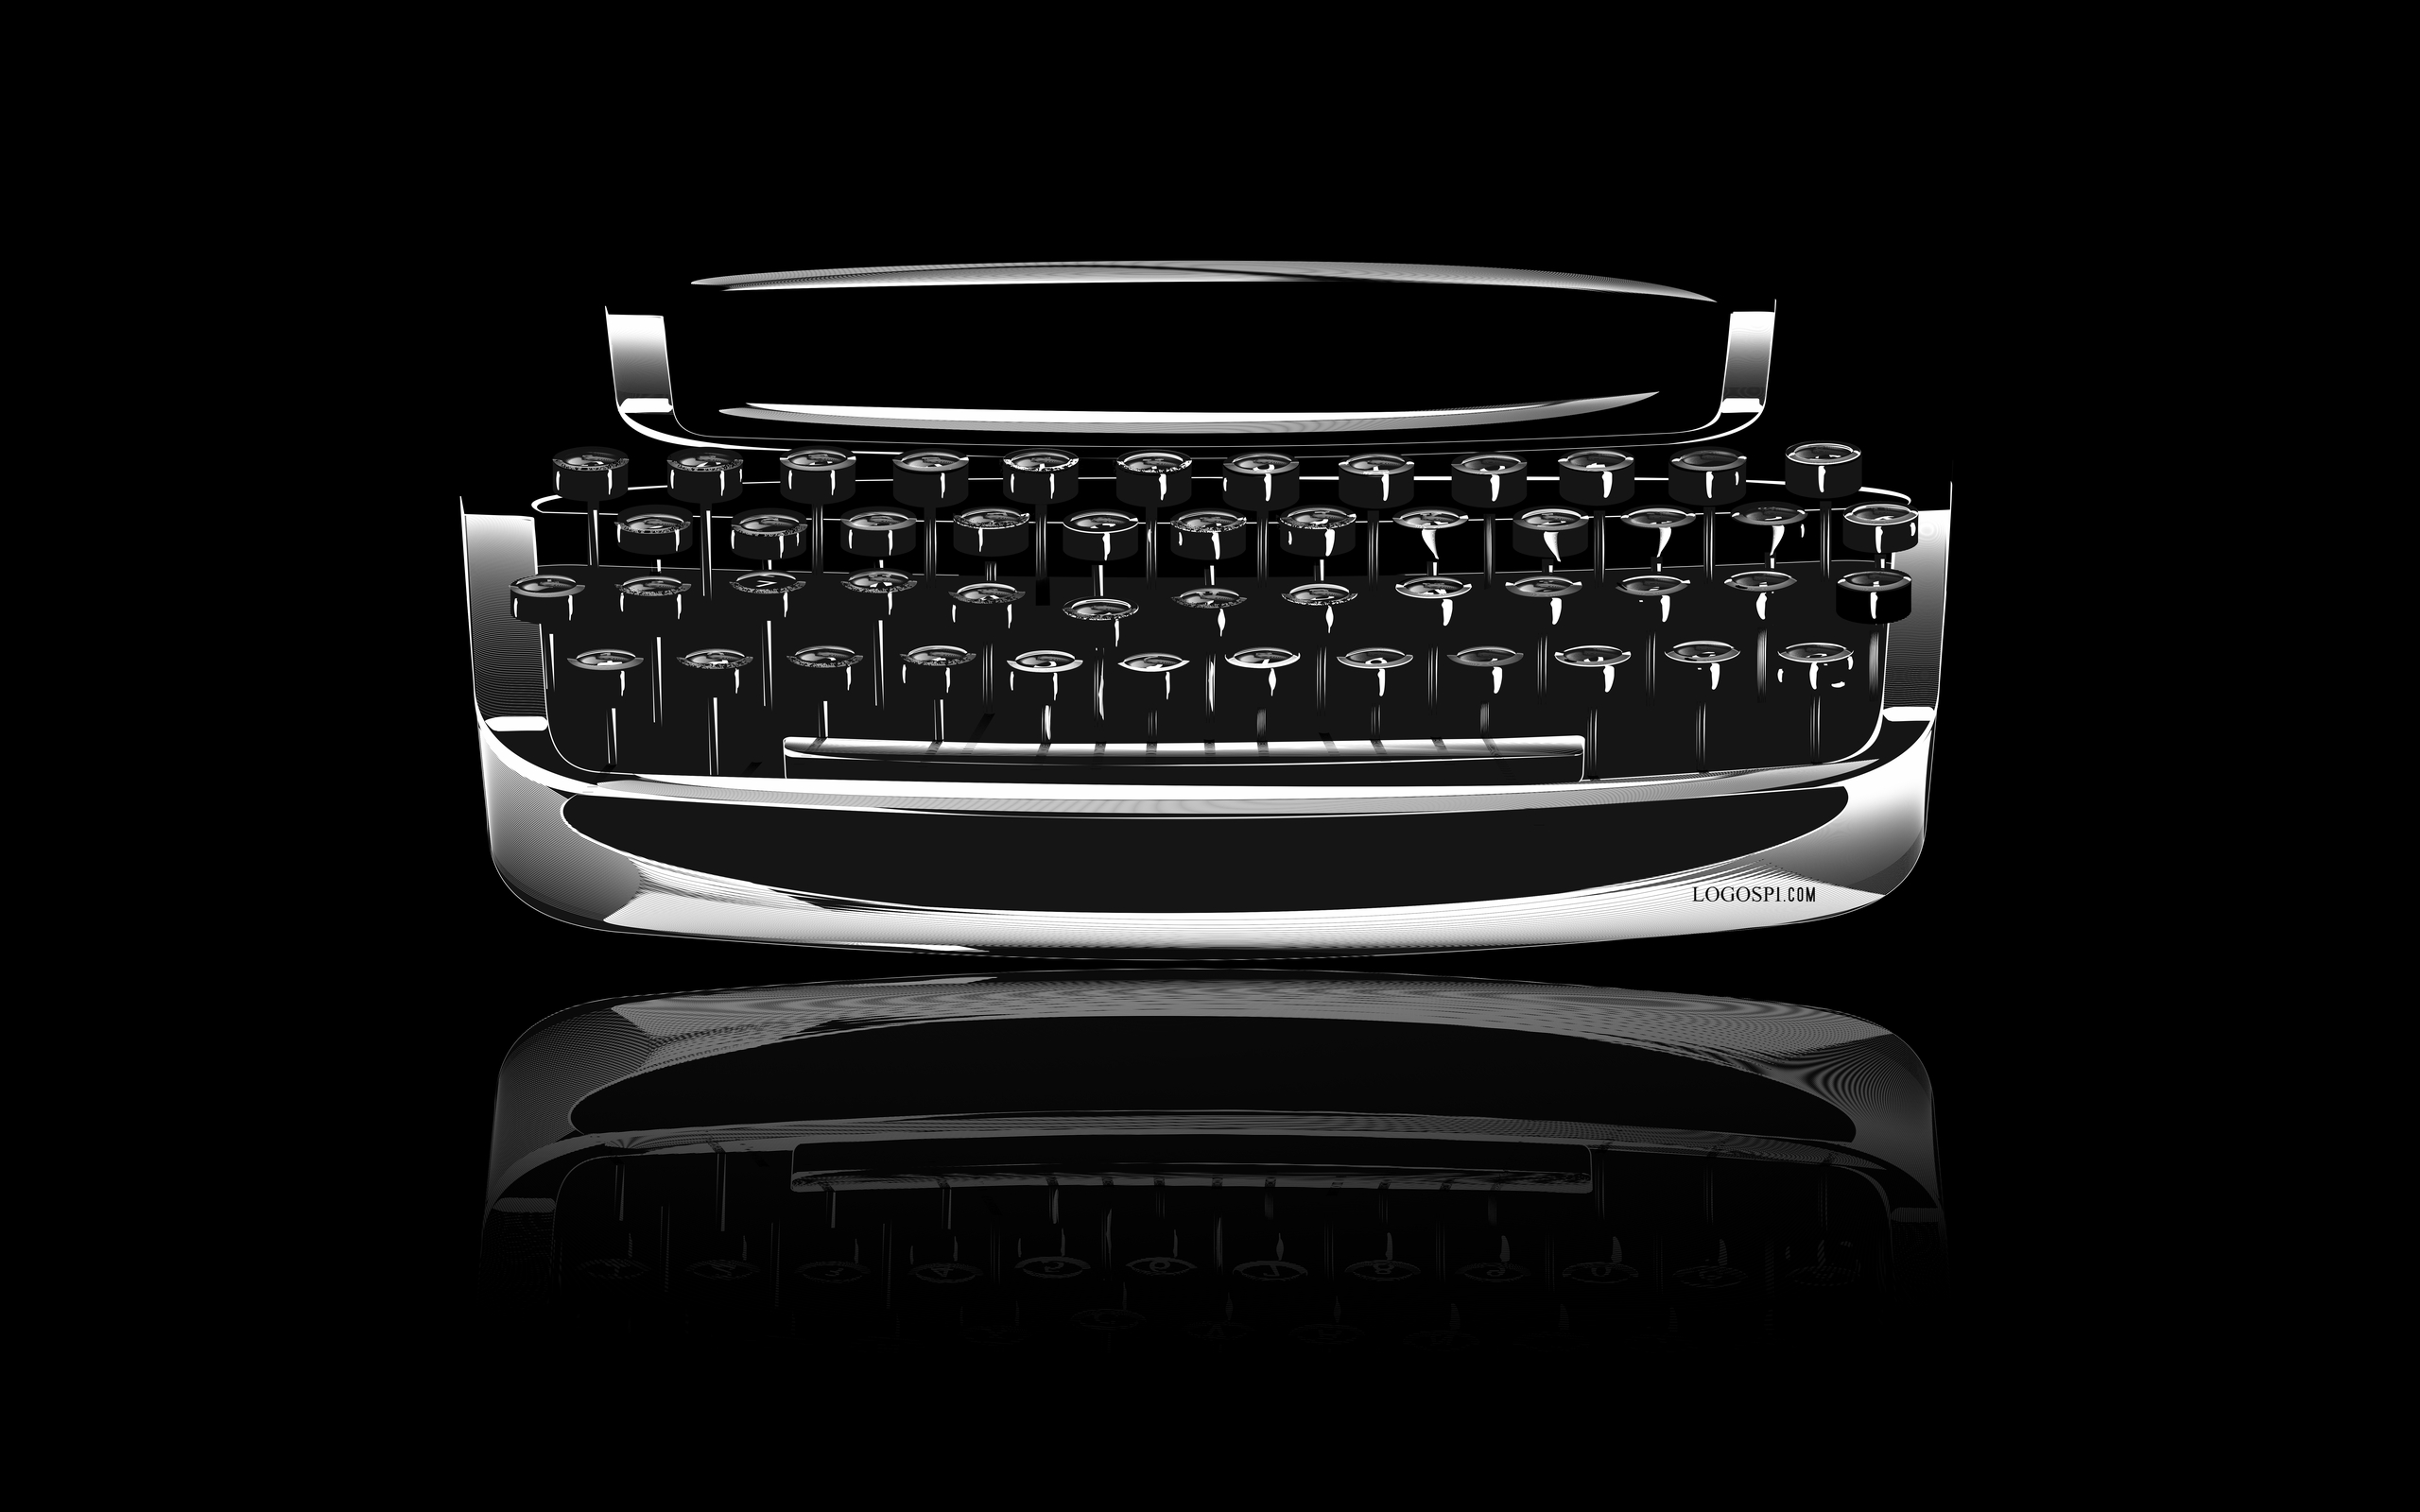 man made, typewriter, word